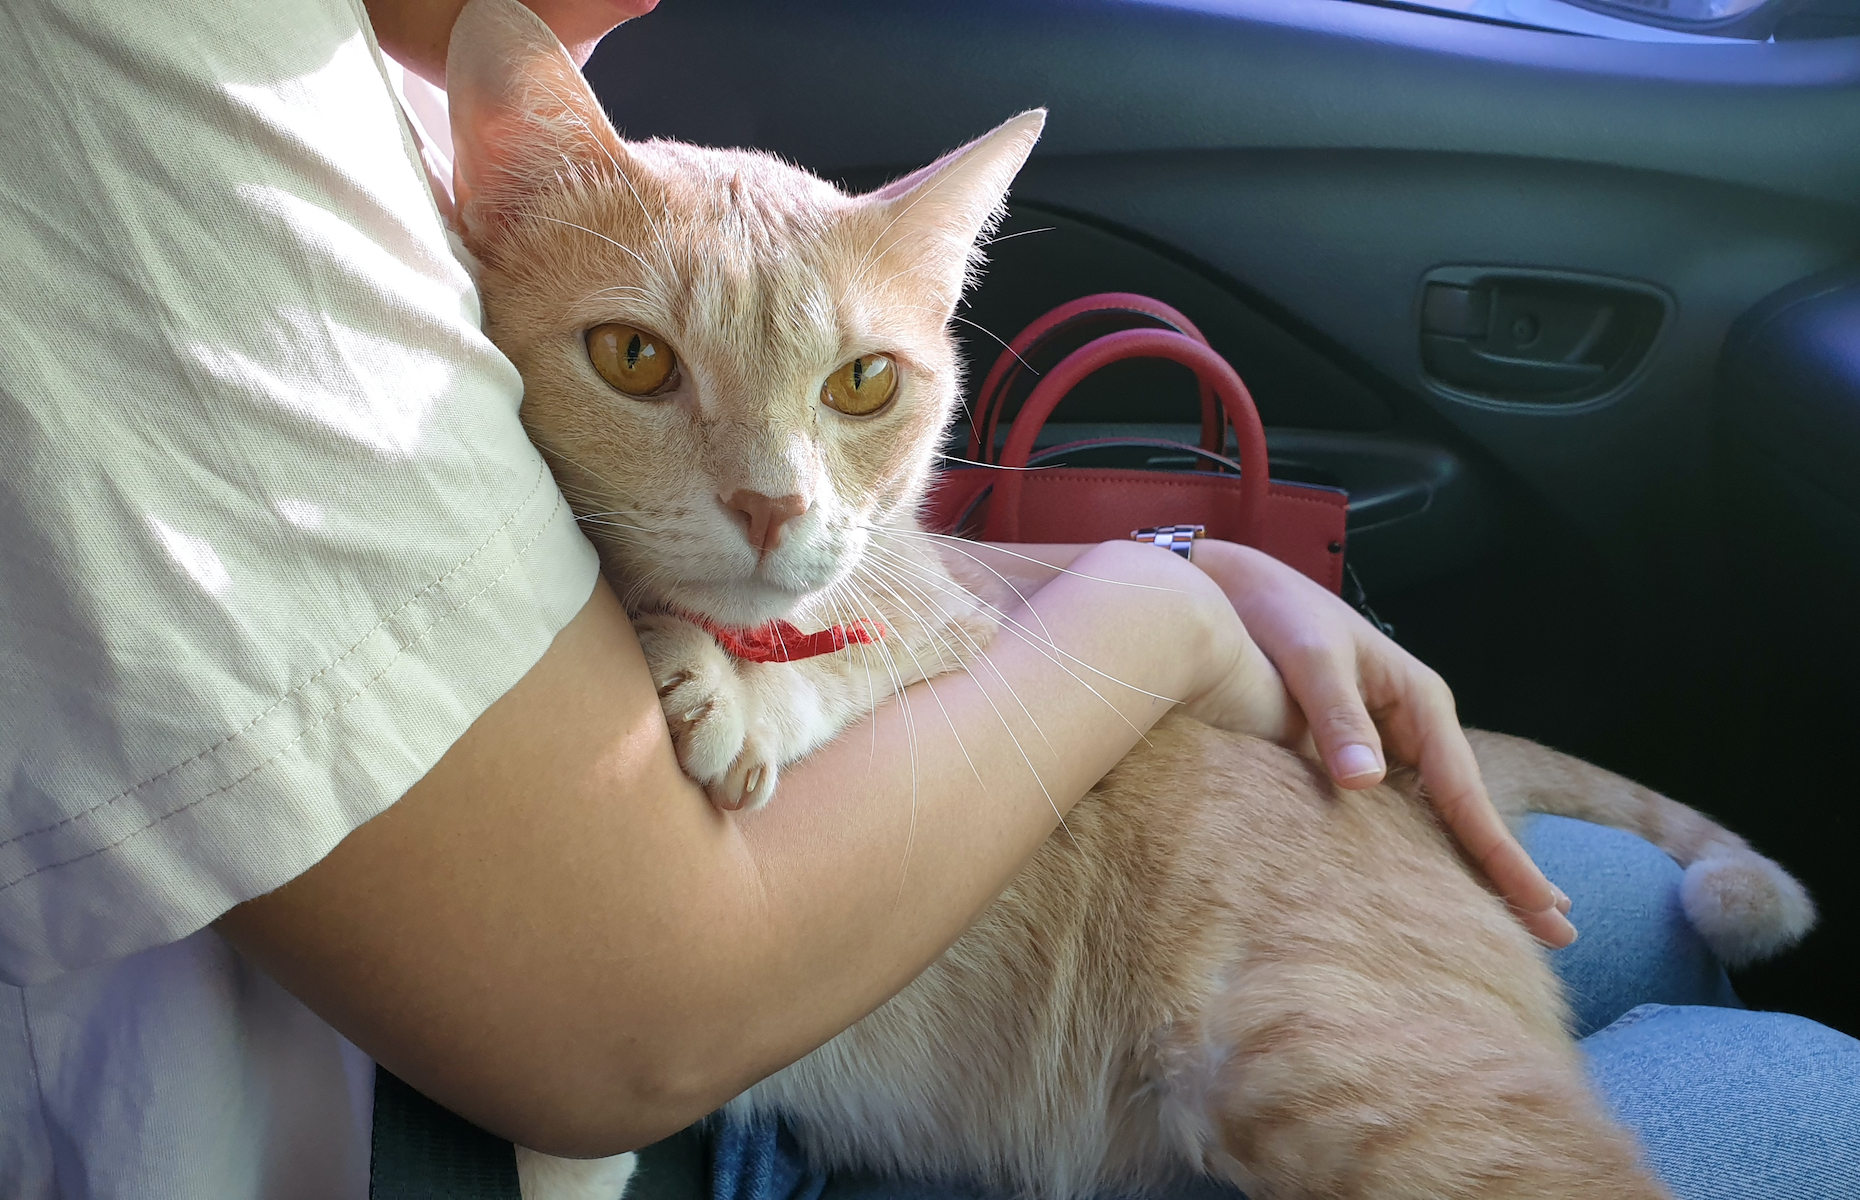 <p>La plupart des chats détestent les voyages en voiture. L’endroit le plus sécuritaire pour votre compagnon est donc <a href="https://www.zoomalia.com/blog/article/quelles-precautions-pour-transporter-son-chat-en-voiture.html">dans sa cage, surtout pas dans vos bras</a>. Un chat en liberté dans une voiture peut vous distraire et même devenir un projectile en cas d’accident. Mettez-le dans sa cage et attachez celle-ci sur le siège arrière, c’est plus prudent.</p>